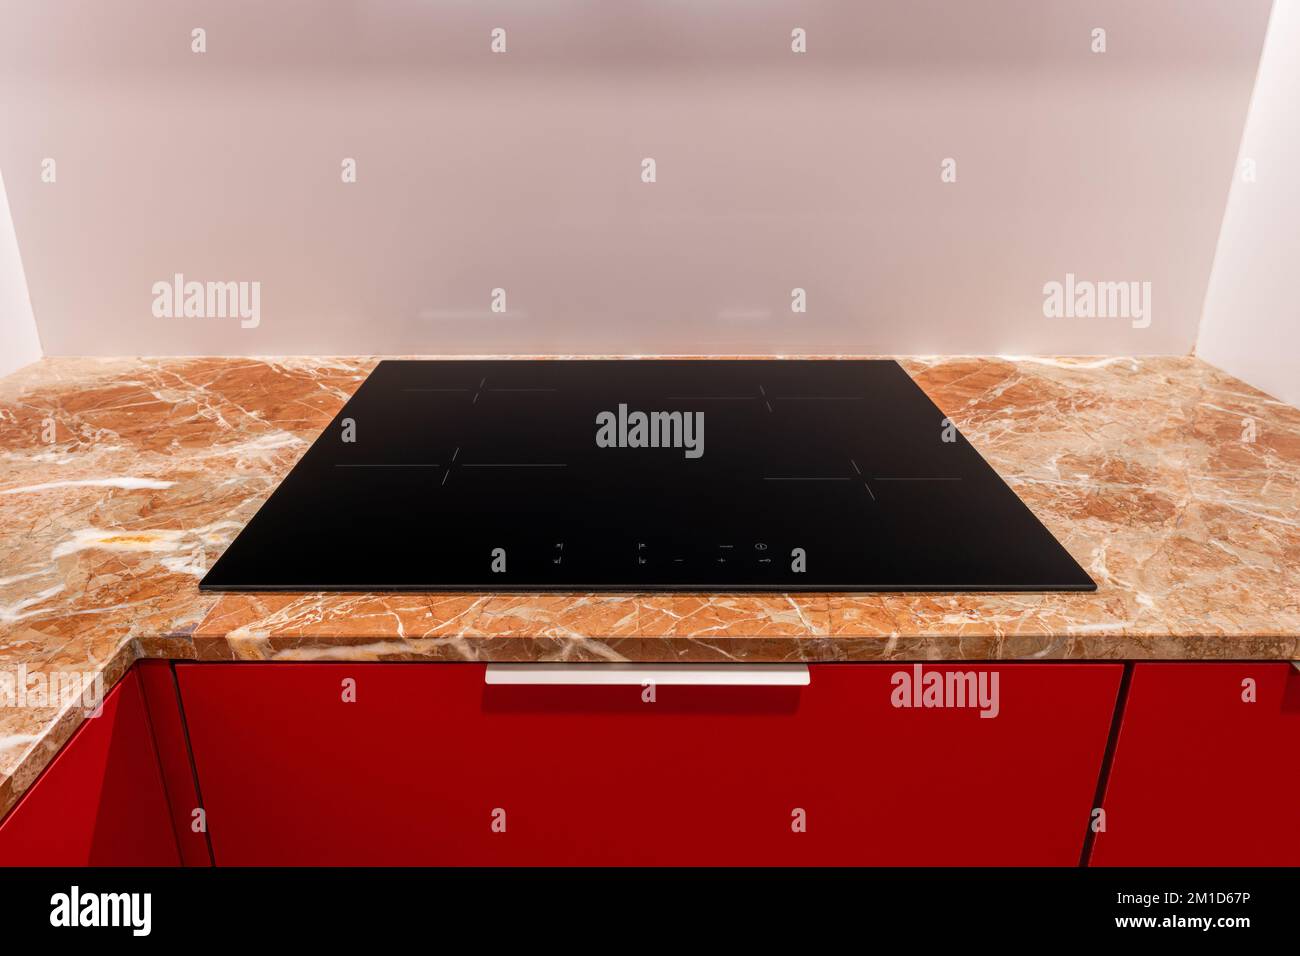 Das schwarze Induktionskochfeld mit vier Kochplatten ist in die beige Marmorablagefläche eines roten Küchenschranks eingebaut. Hellbraune Arbeitsplatte mit abstraktem Muster Stockfoto